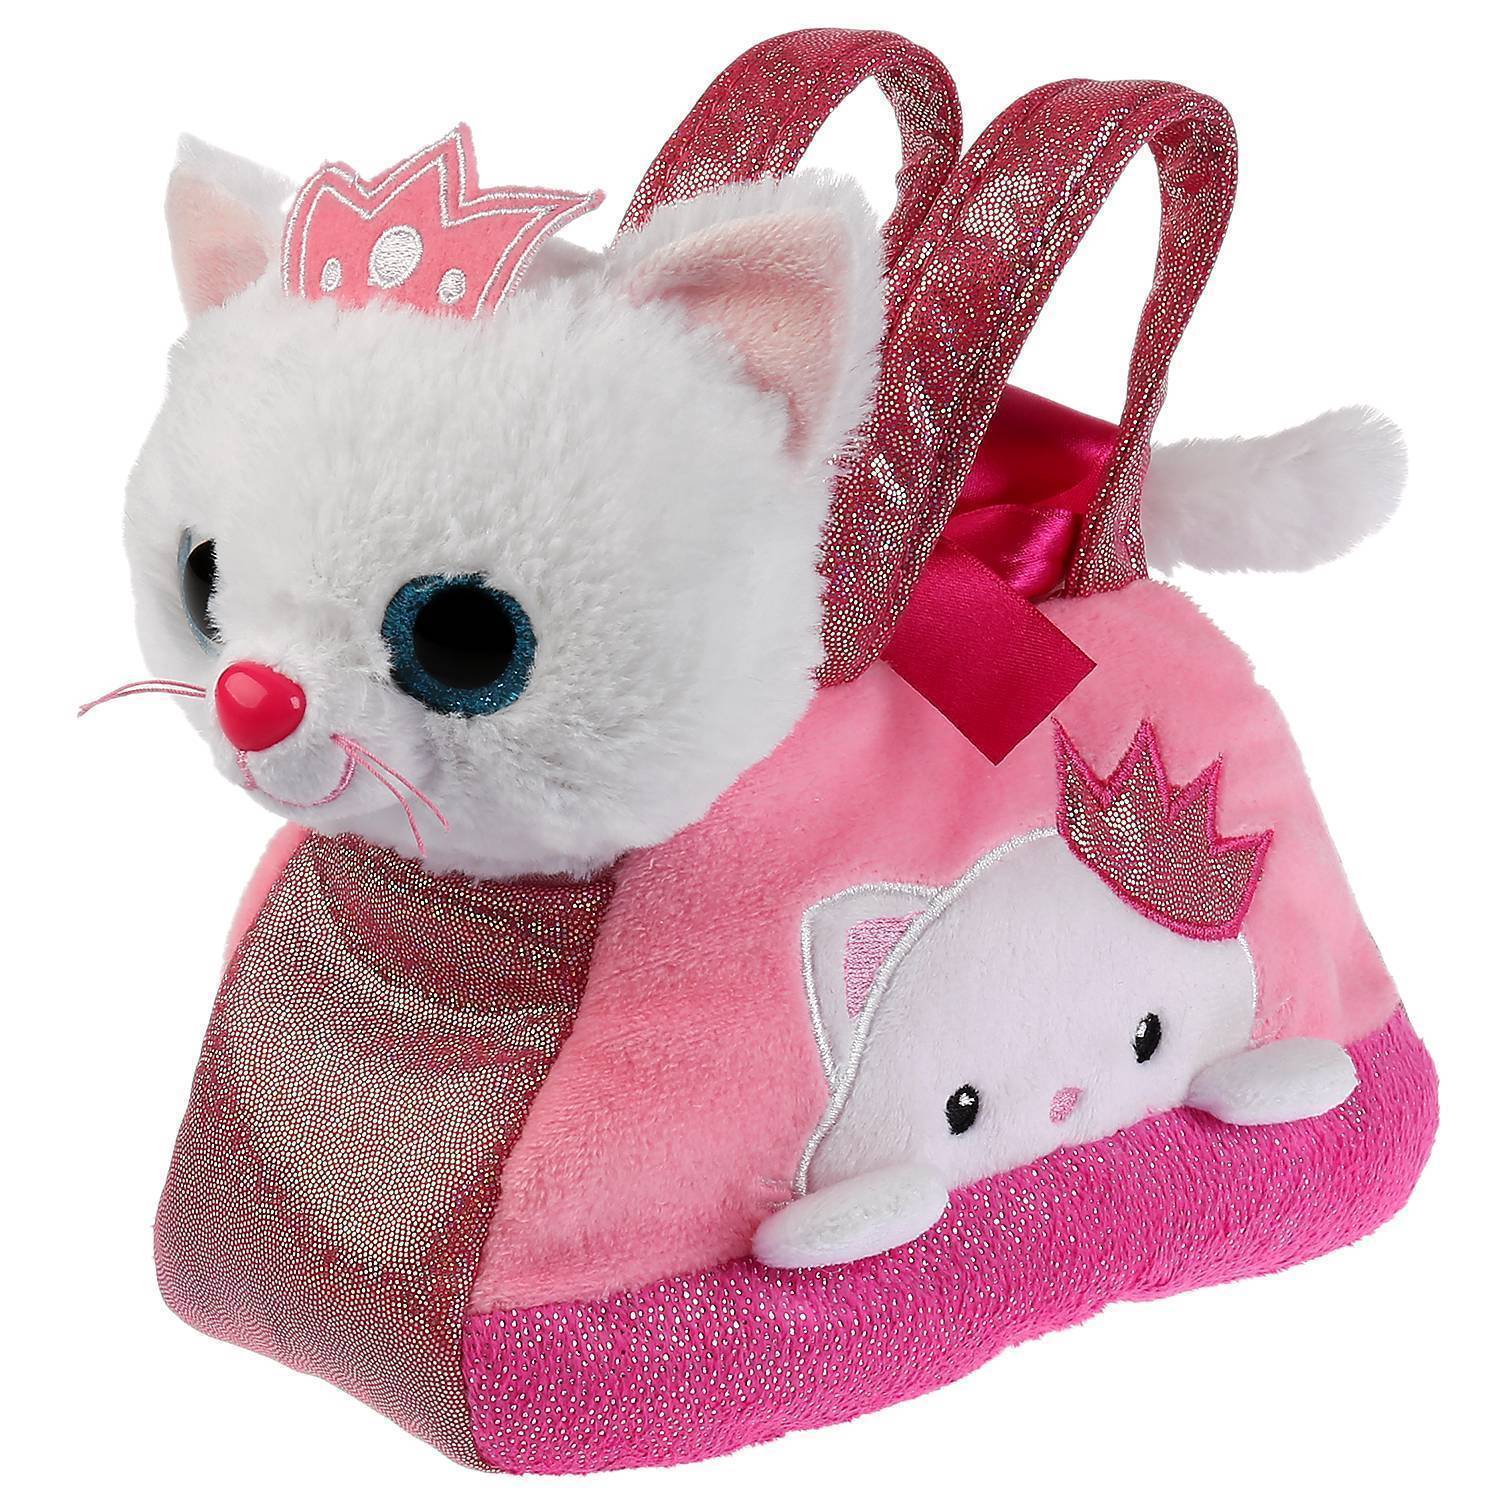 Купить игрушку кошечка. Ct181197-20 мягкая игрушка кошка в сумочке 15 см. Сумочка игрушка петс. Плюшевые игрушки для девочек. Мягкая игрушка "котенок".